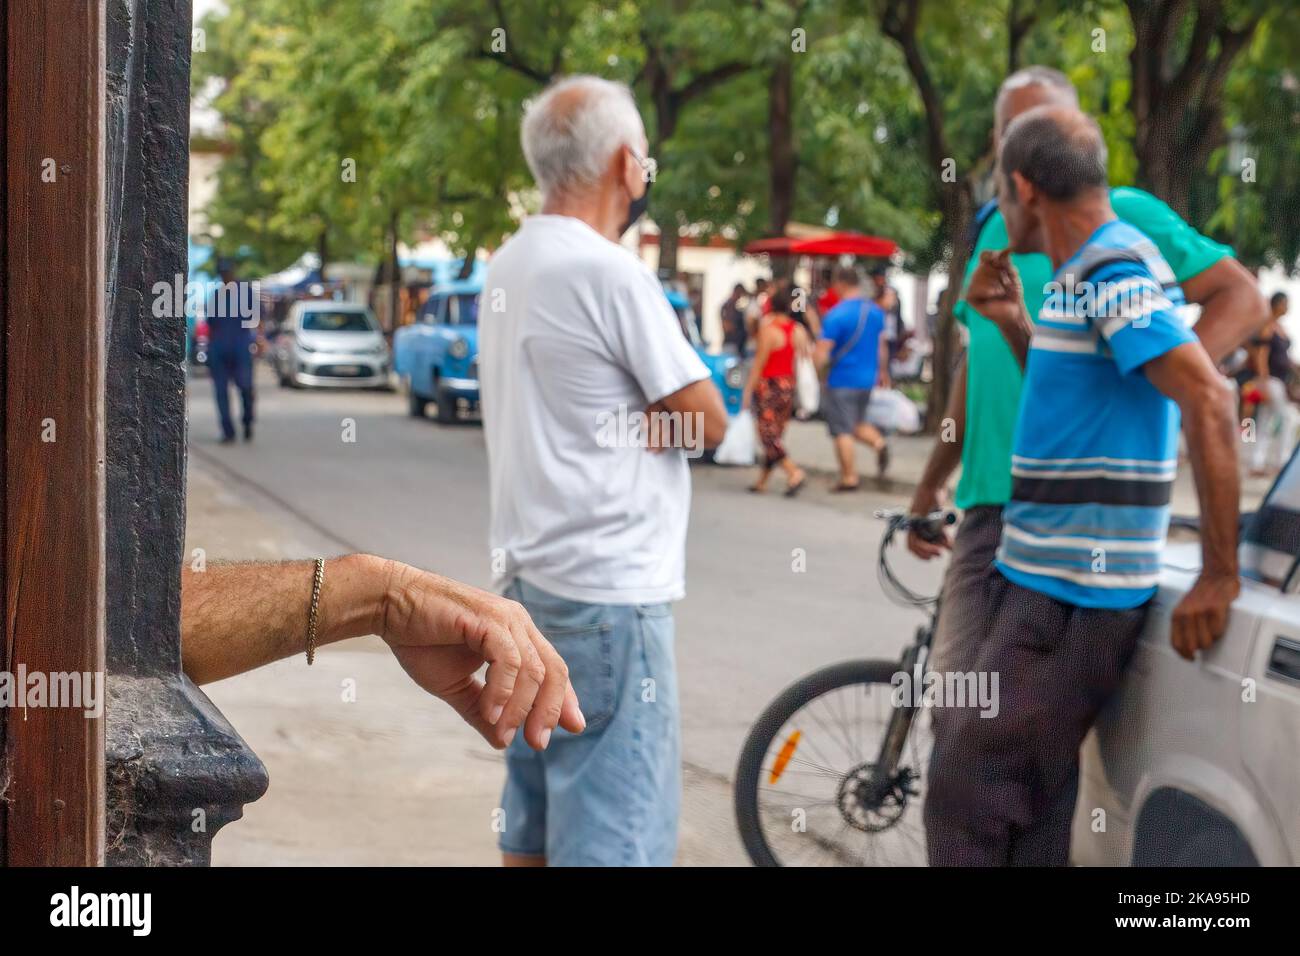 Die Hand eines Mannes, der eine Kette trägt, lehnt sich an eine Säule. Drei weitere Männer sprechen mit einem LADA-Auto. Stockfoto